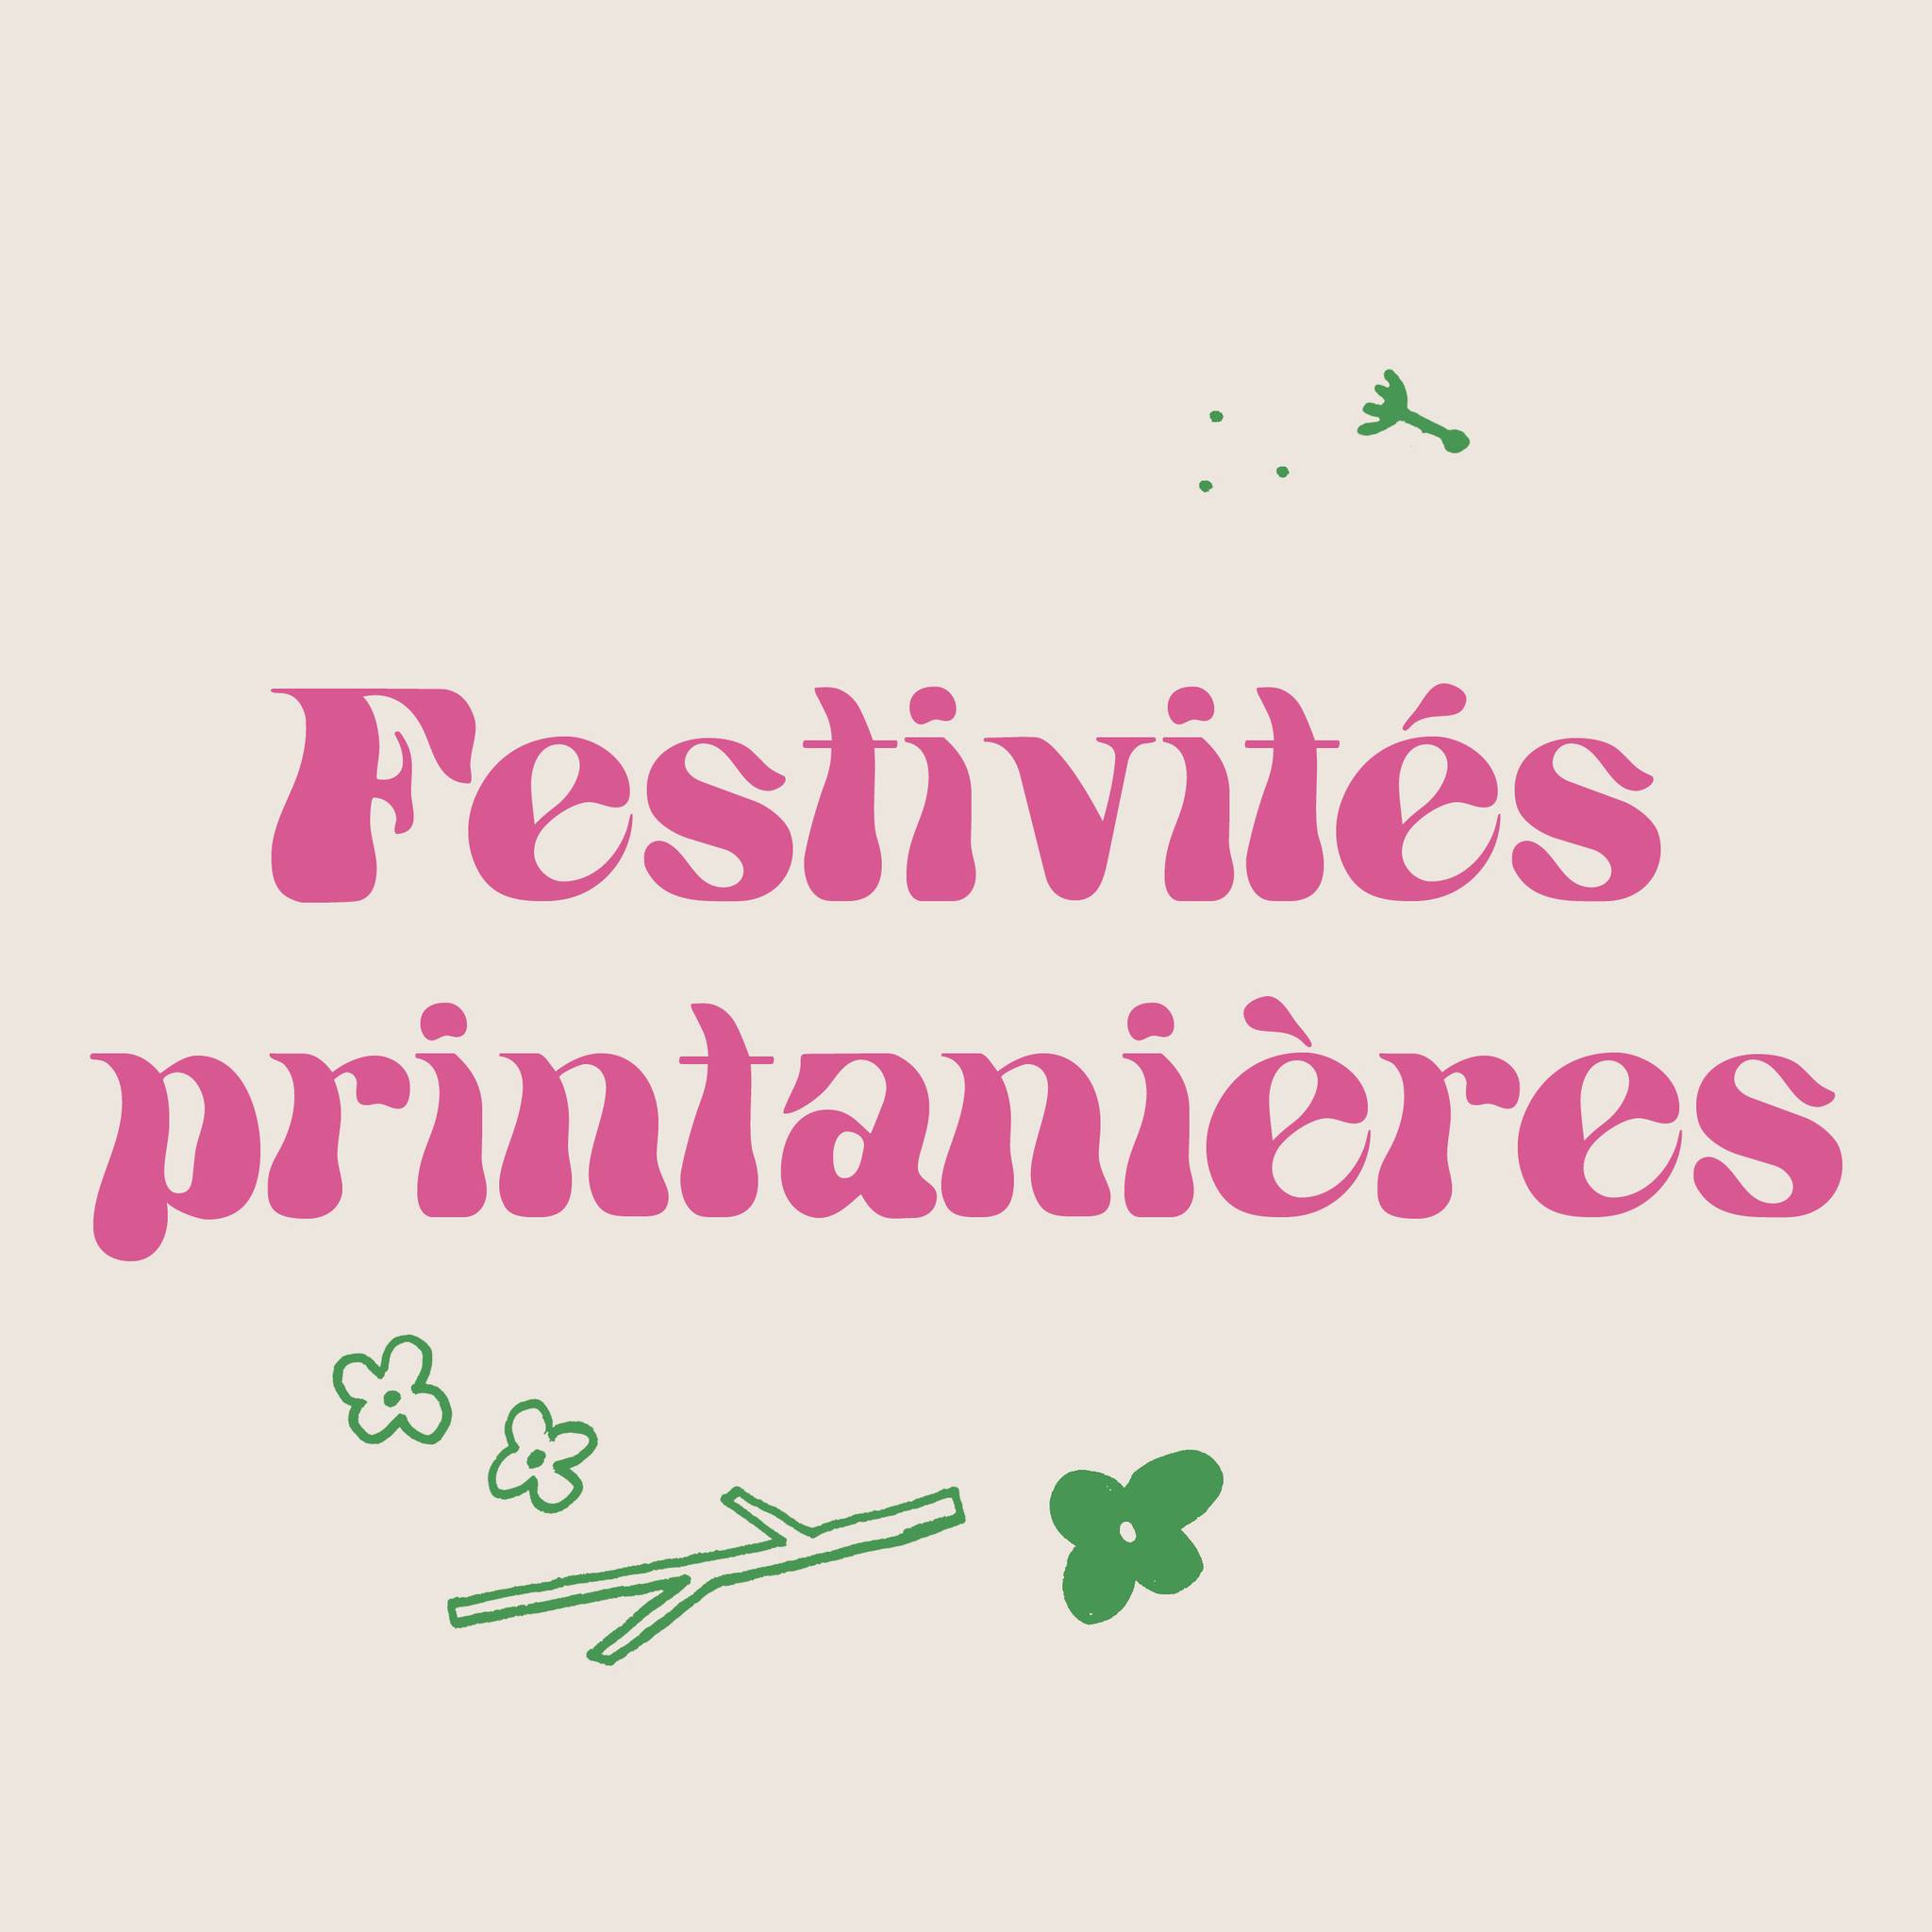 You are currently viewing Festivités printanières – Conférences